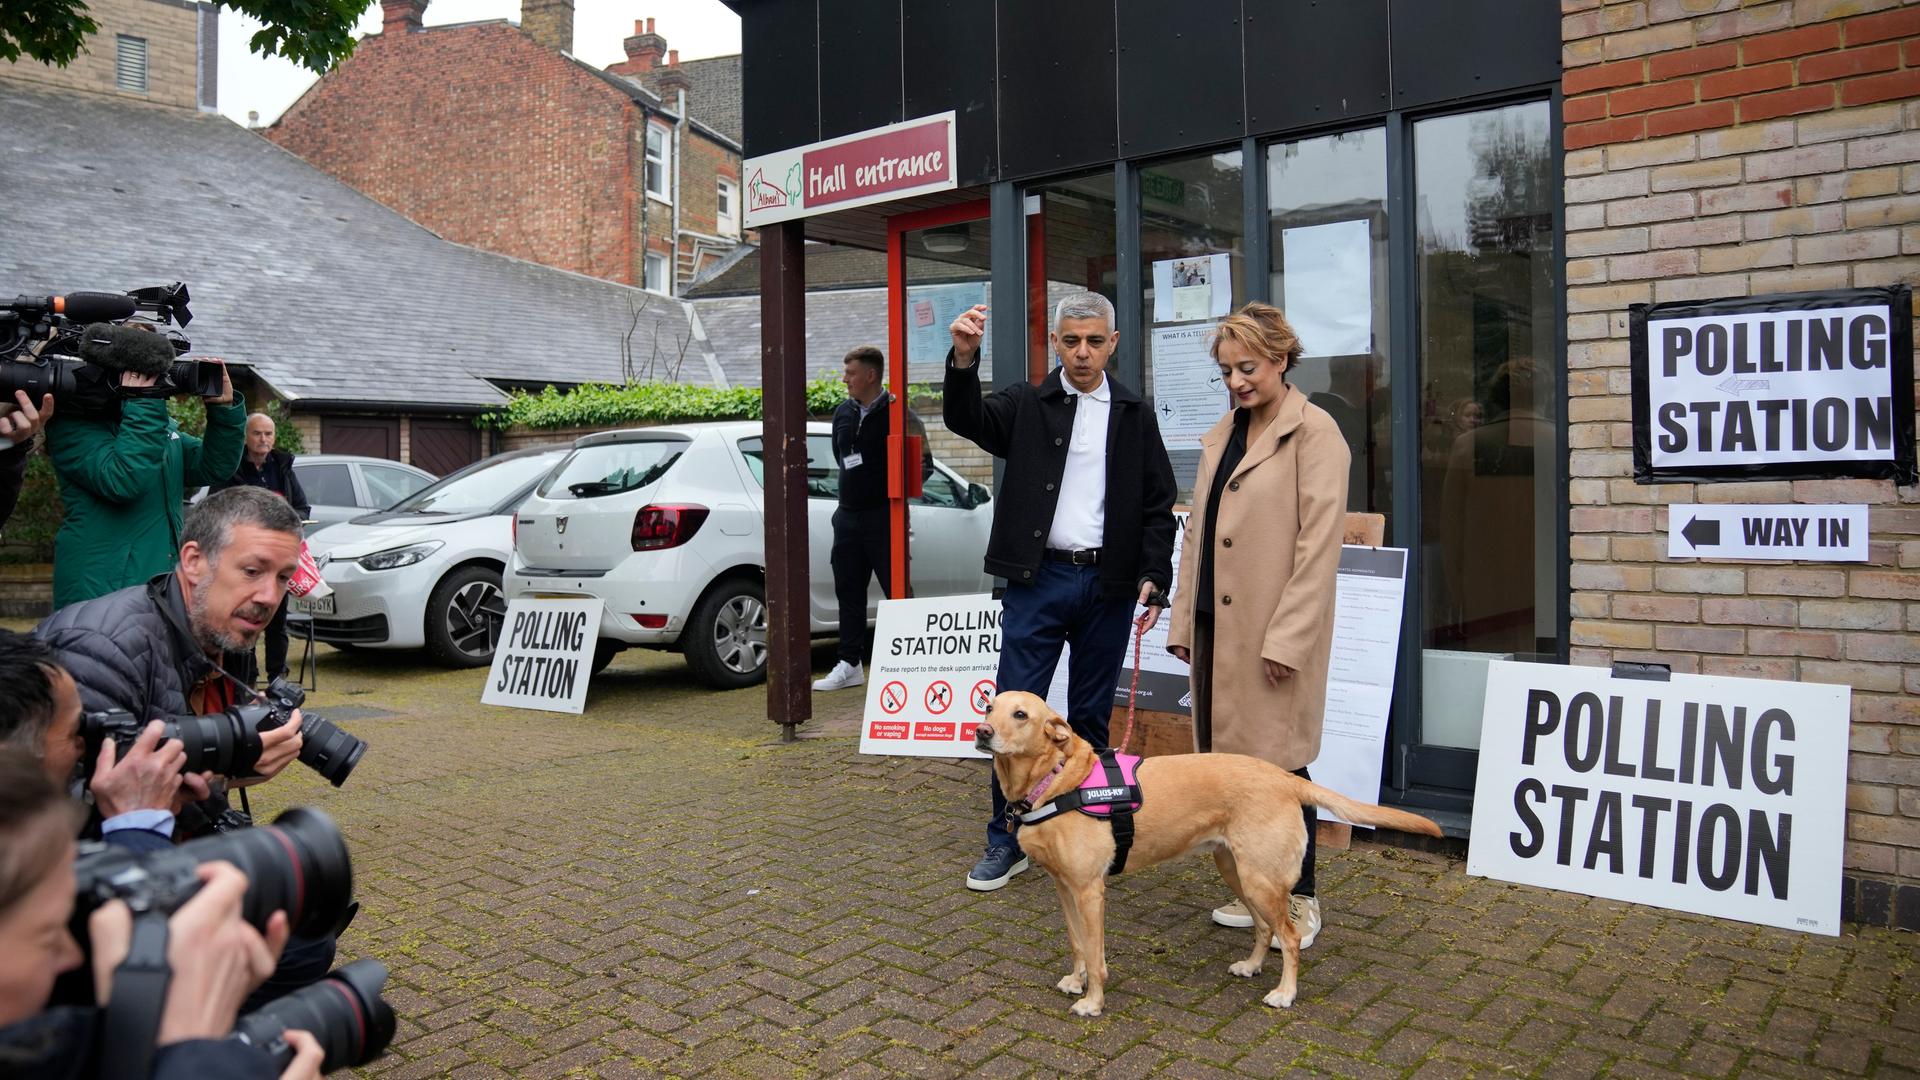 Die beiden stehen mit ihrem braunen Hund vor der "Polling Station" und werden von Fotografen fotografiert. Khan hebt die Hand nach oben. 